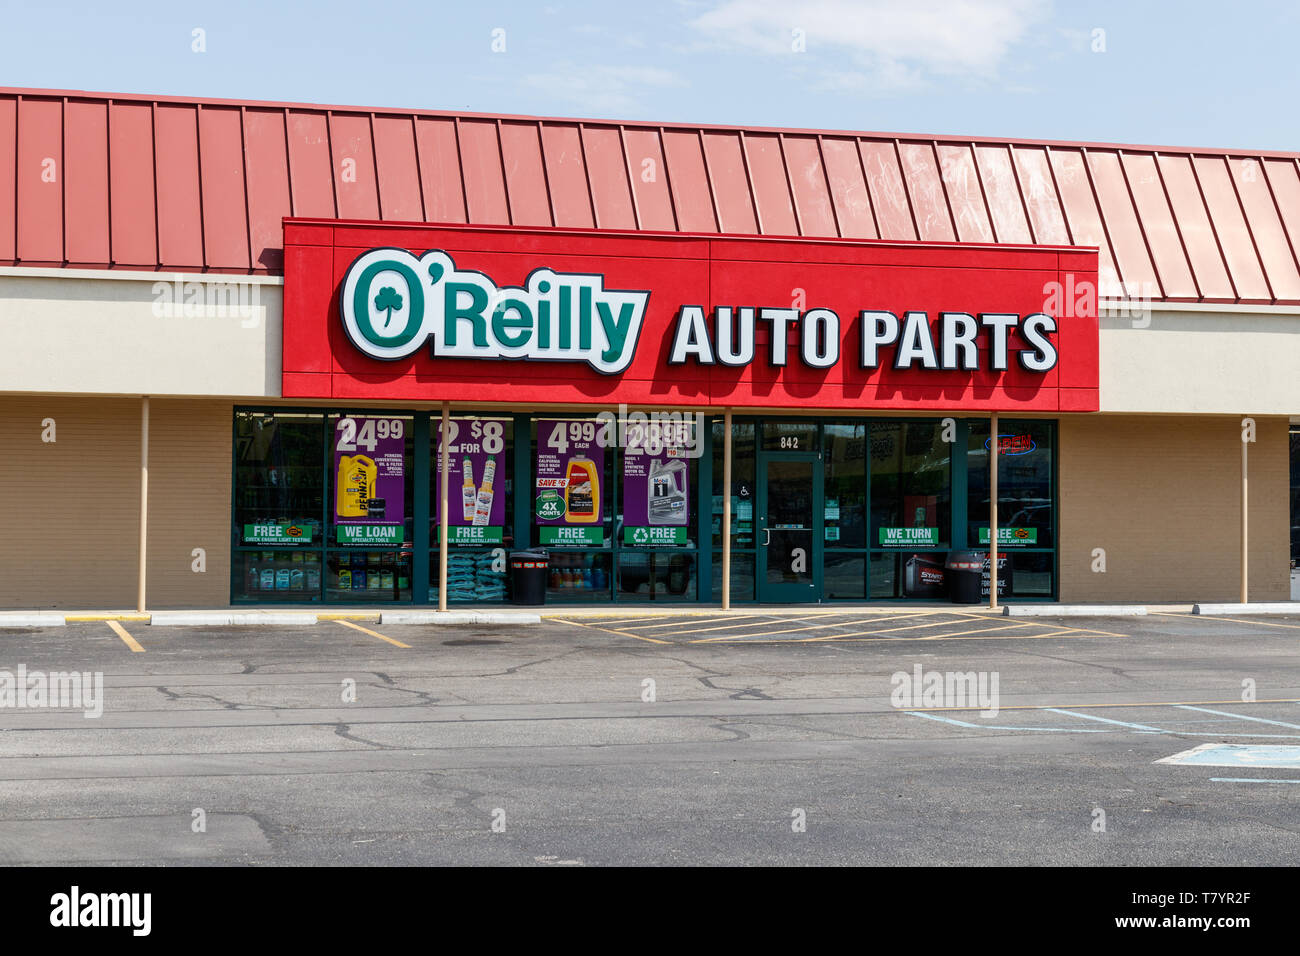 Tipton Circa Mayo 19 O Reilly Auto Parts Store O Reilly Es Un Proveedor Y Distribuidor De Piezas De Automocion I Fotografia De Stock Alamy